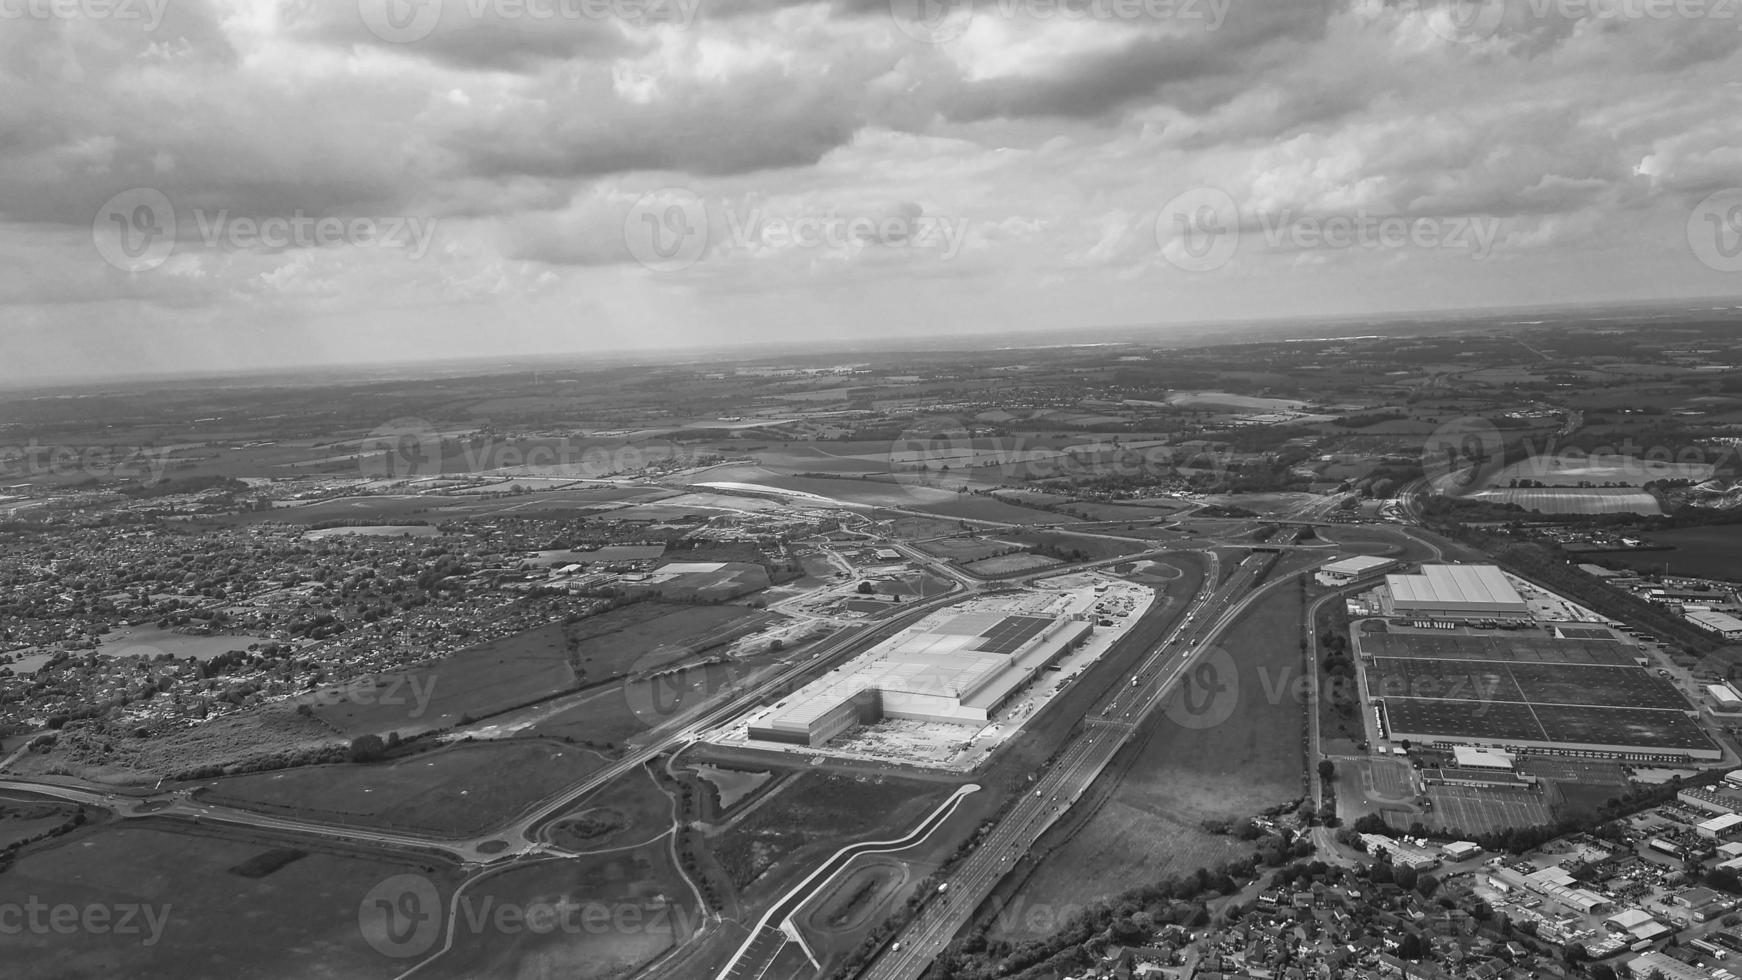 vista aérea clássica em preto e branco de alto ângulo da paisagem urbana da inglaterra grã-bretanha foto